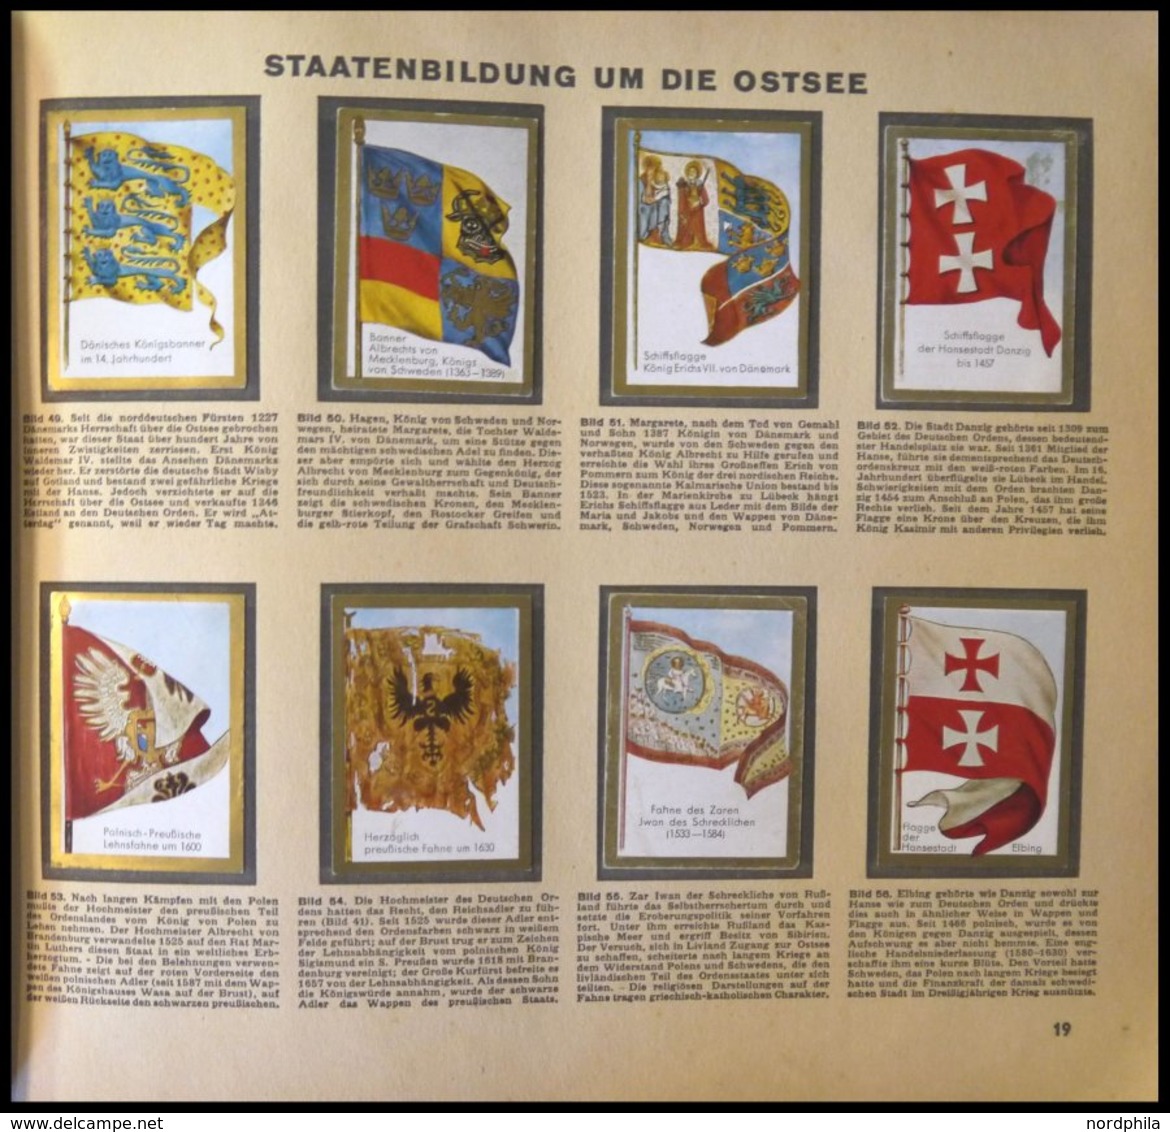 SONSTIGE MOTIVE Sammelbilderalbum Die Welt In Bildern - Historische Fahnen, Album 8, Leichte Gebrauchsspuren - Sin Clasificación